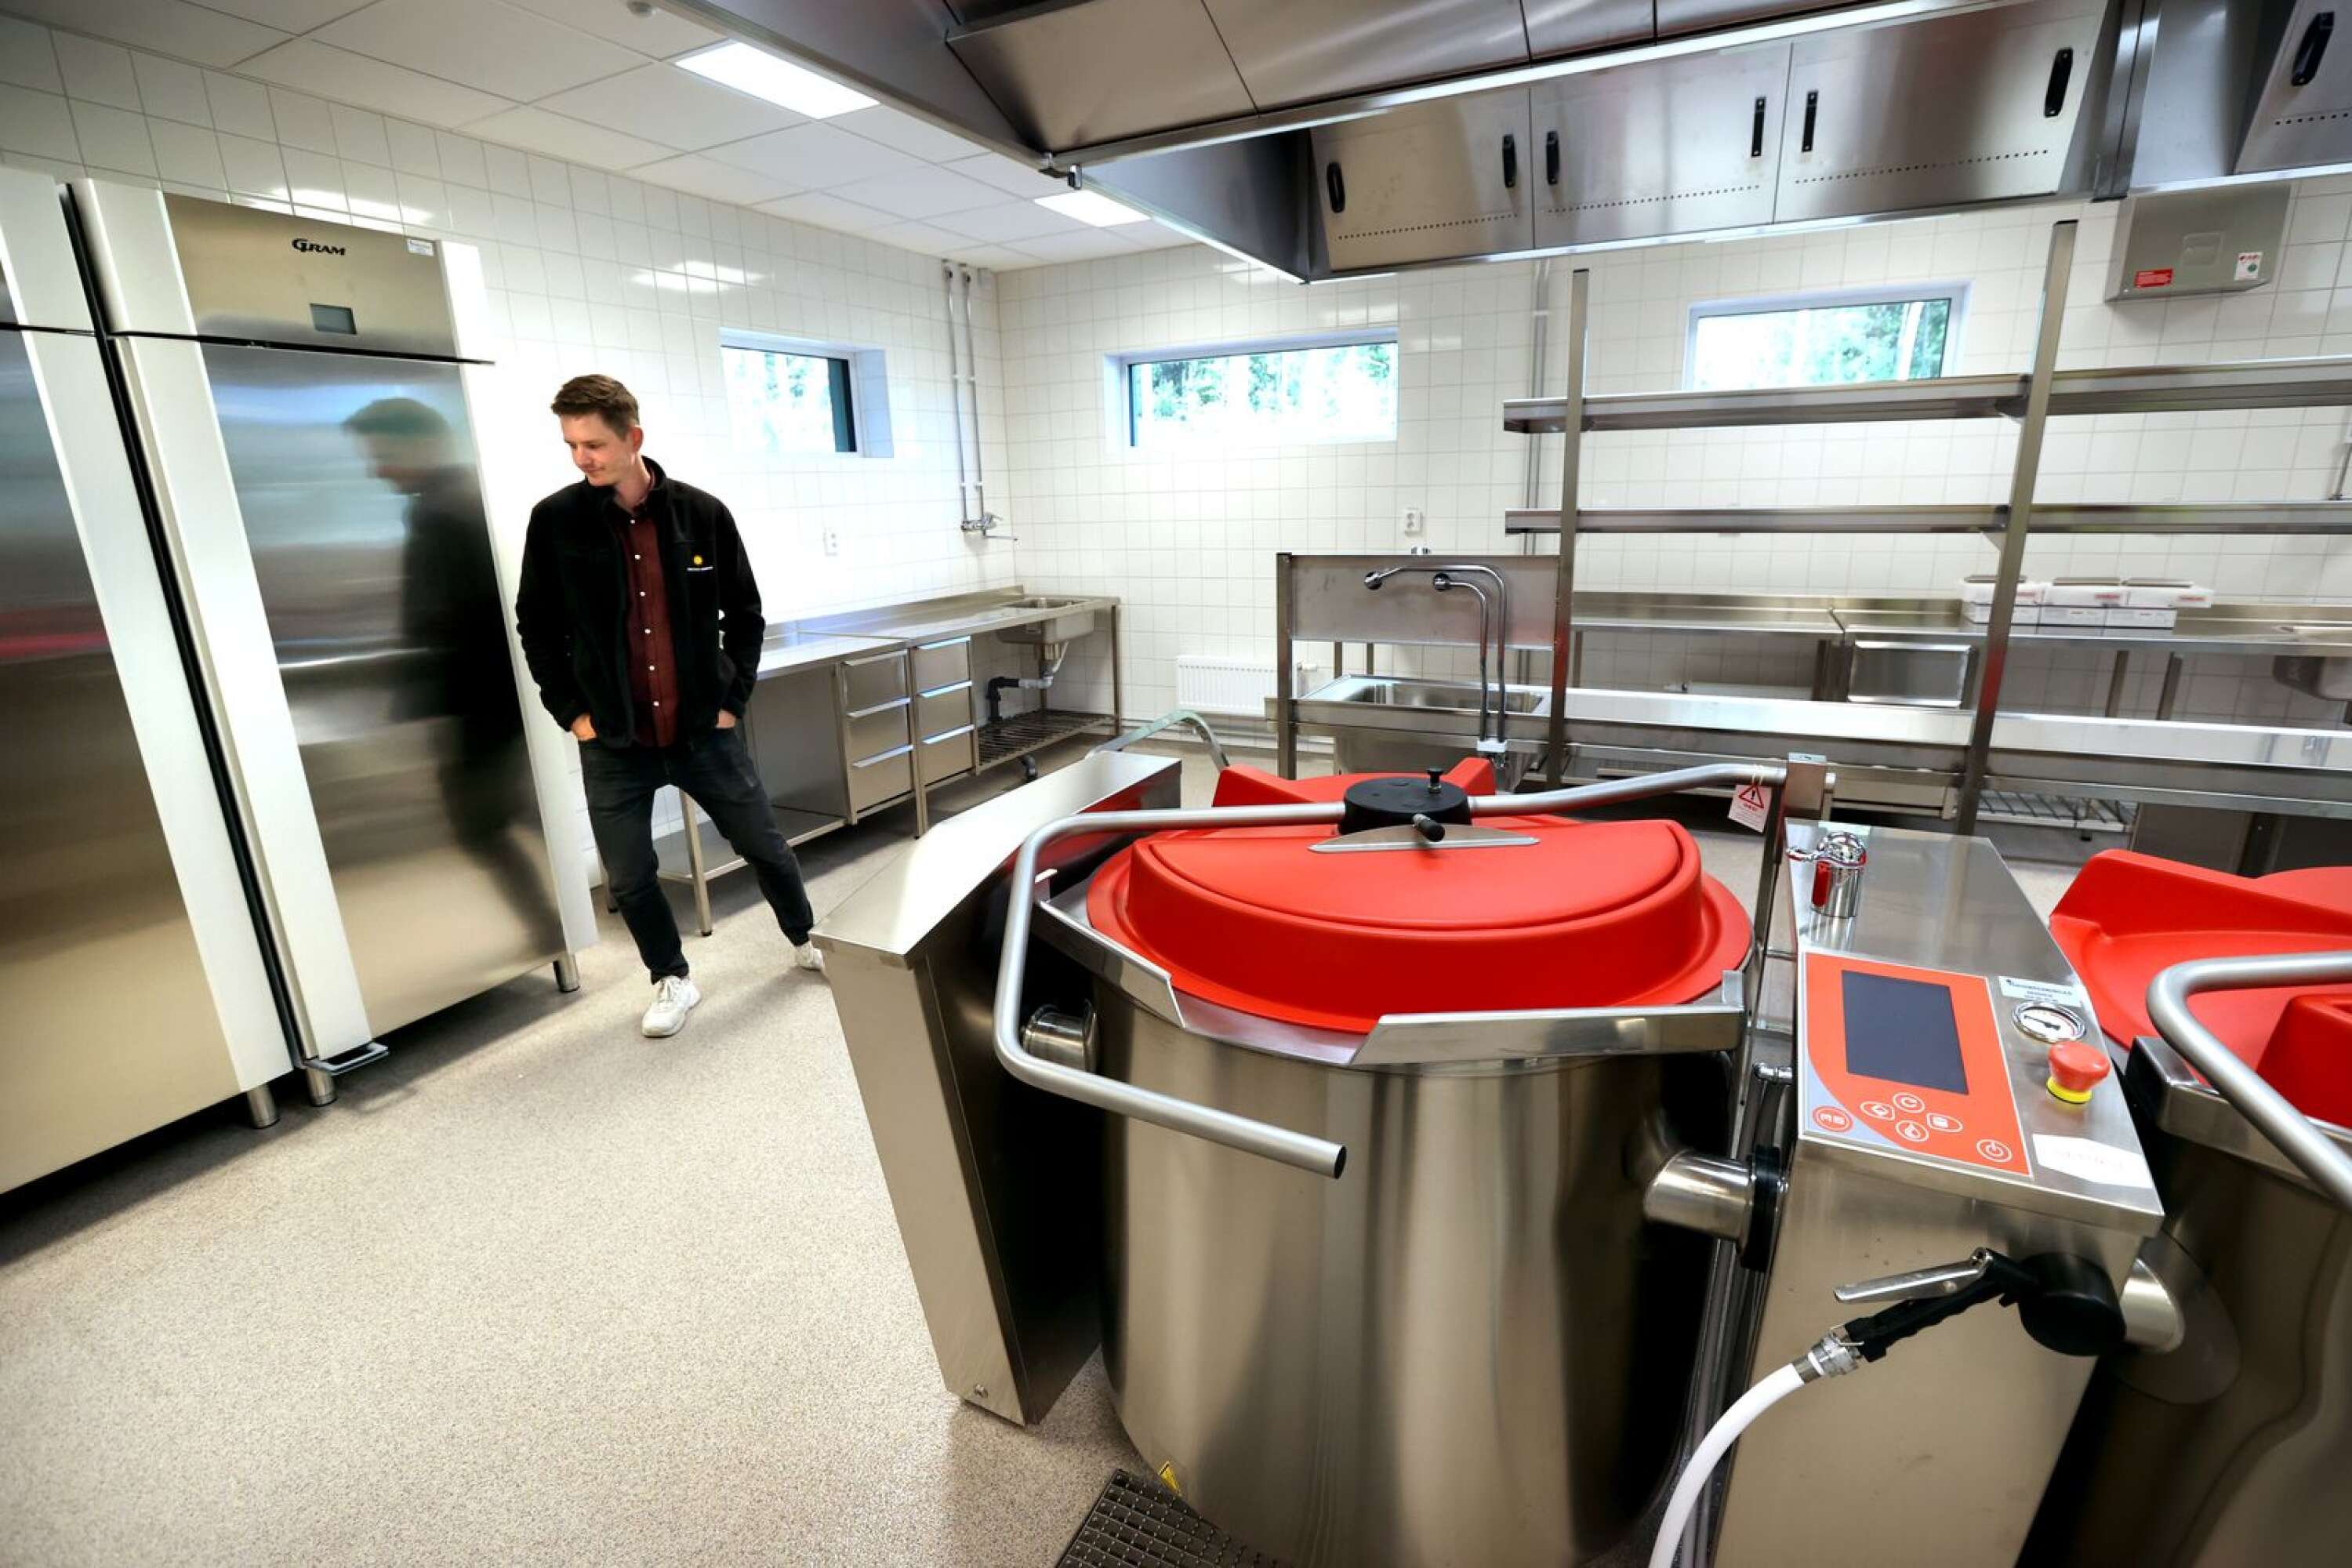 Köket har en produktionskapacitet av 600 portioner per dag, berättar Patrik Johansson.